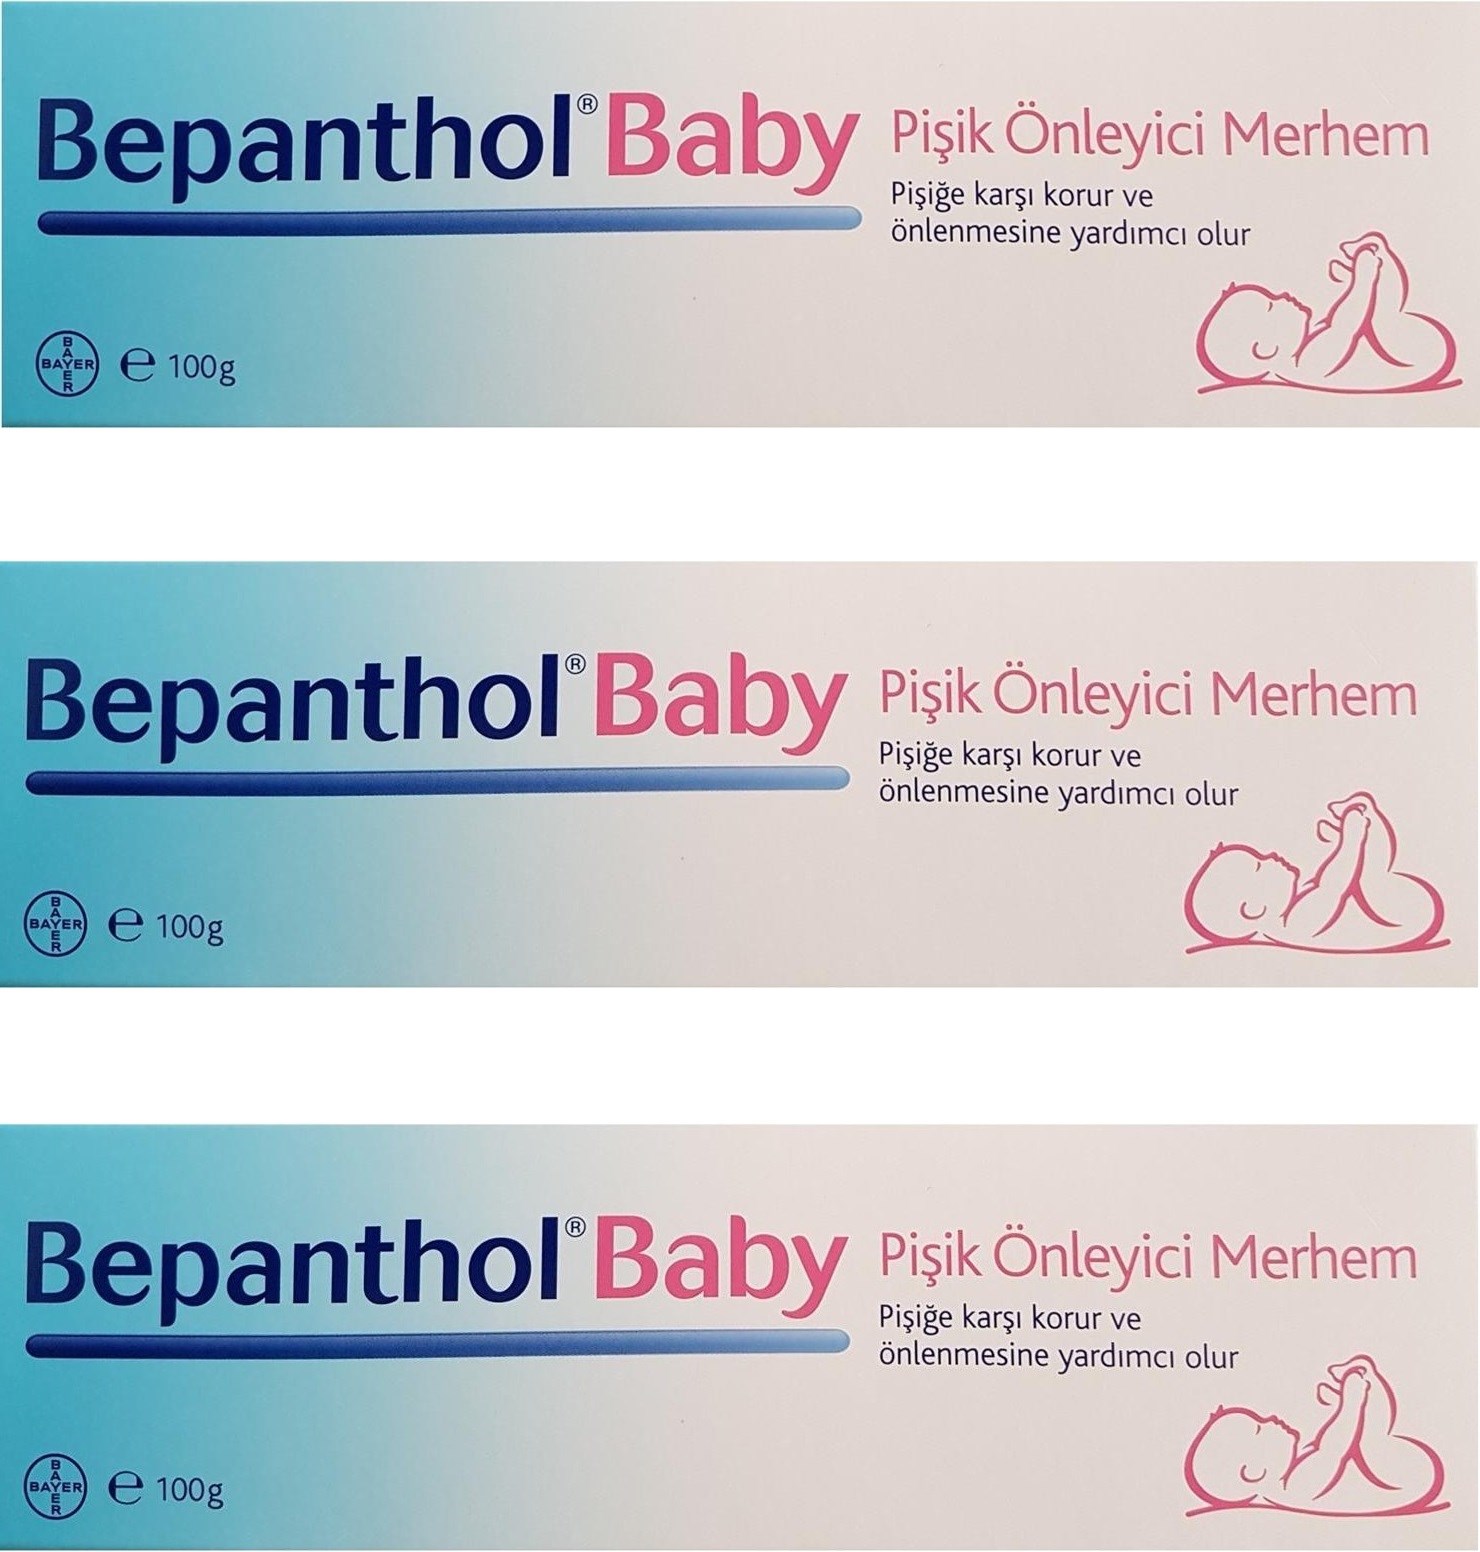 Bepanthol Baby Pişik Önleyici Merhem 100 gr-3 ADET SKT:12/2021